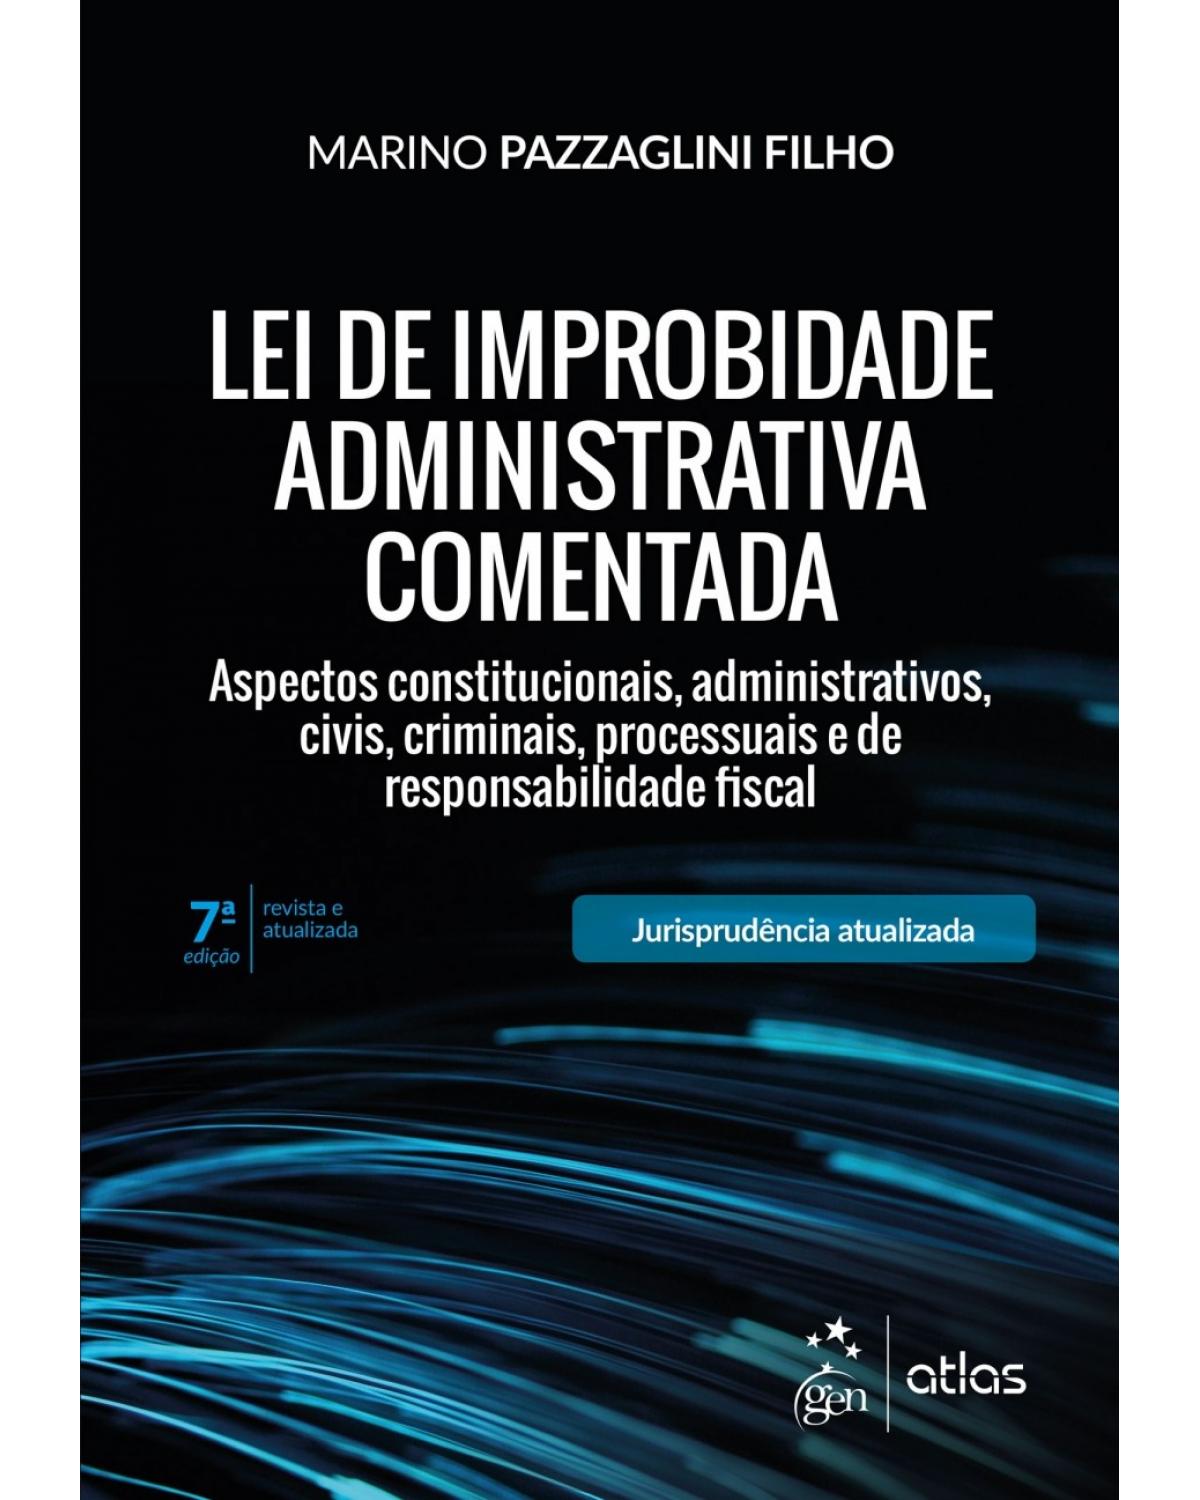 Lei de improbidade administrativa comentada - aspectos constitucionais, administrativos, civis, criminais, processuais e de responsabilidade fiscal - 7ª Edição | 2018